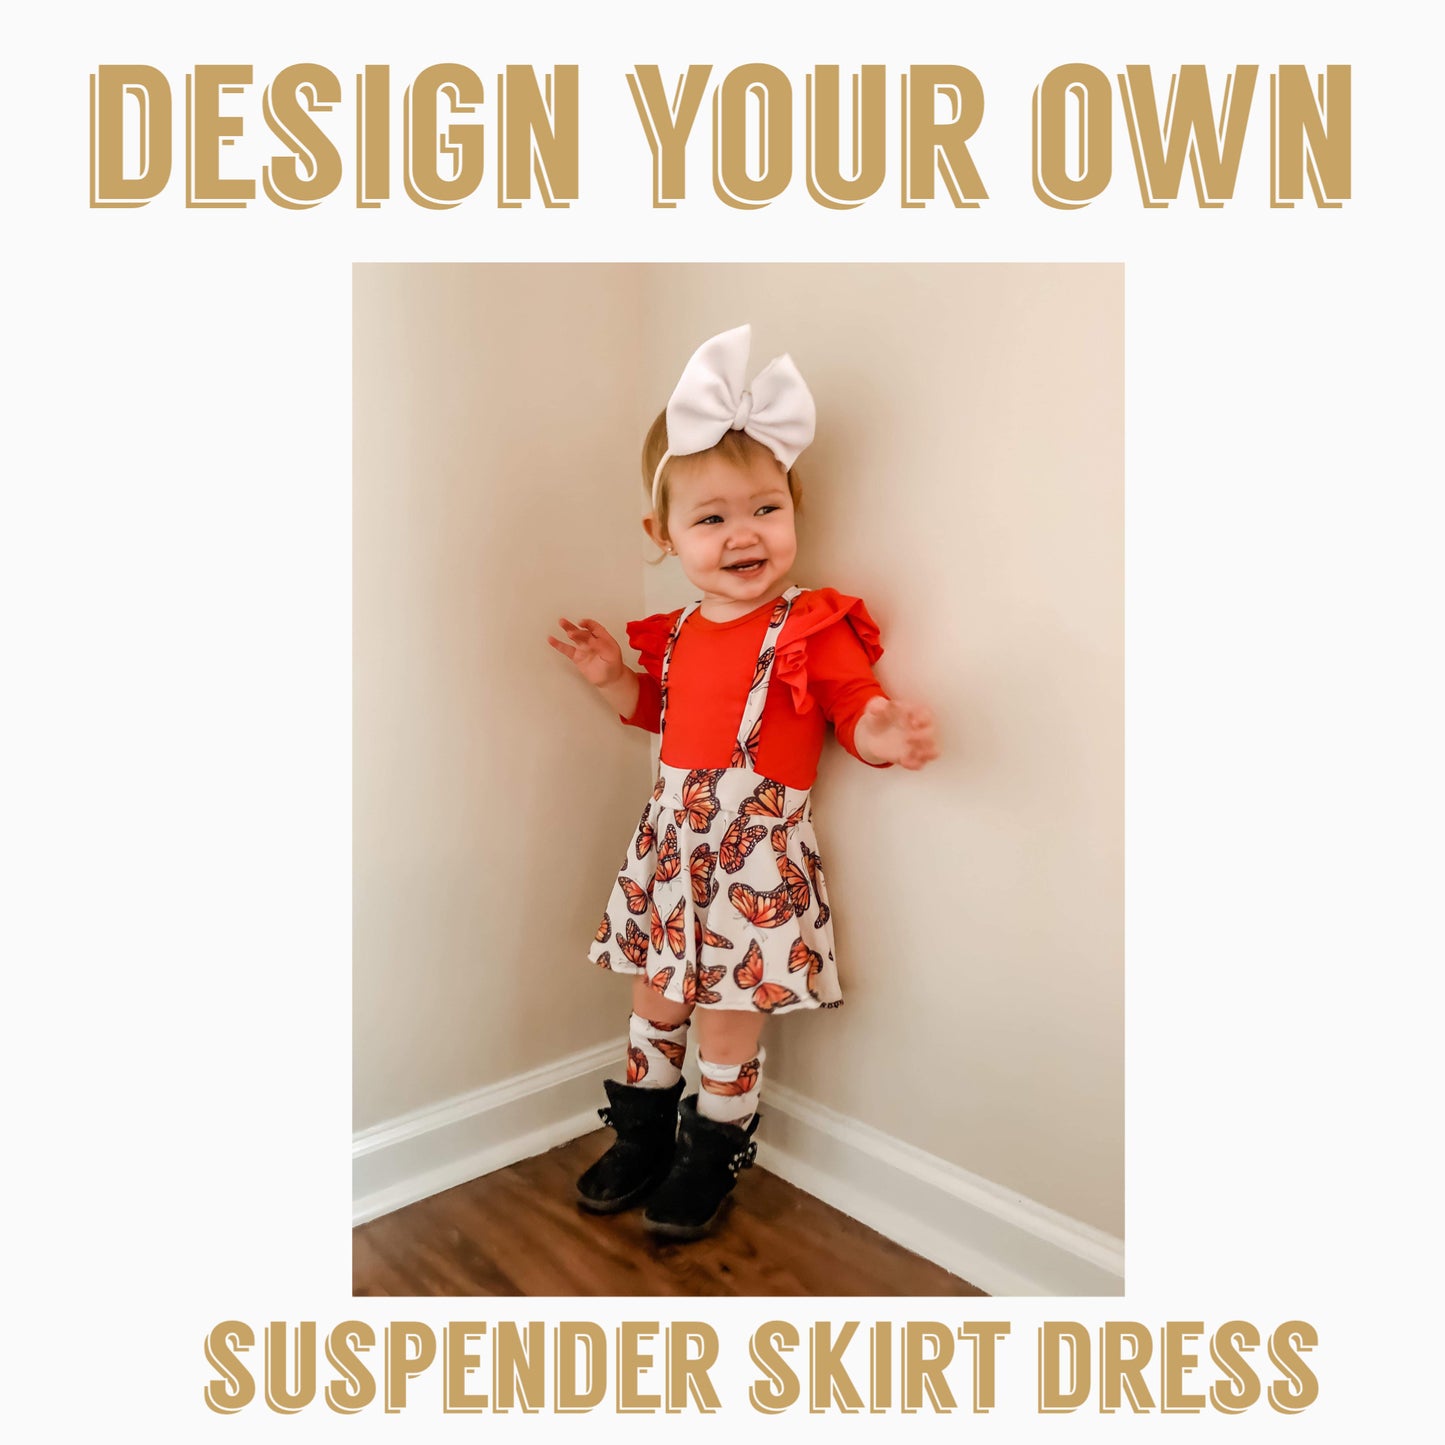 Design your own | Suspender skirt dress